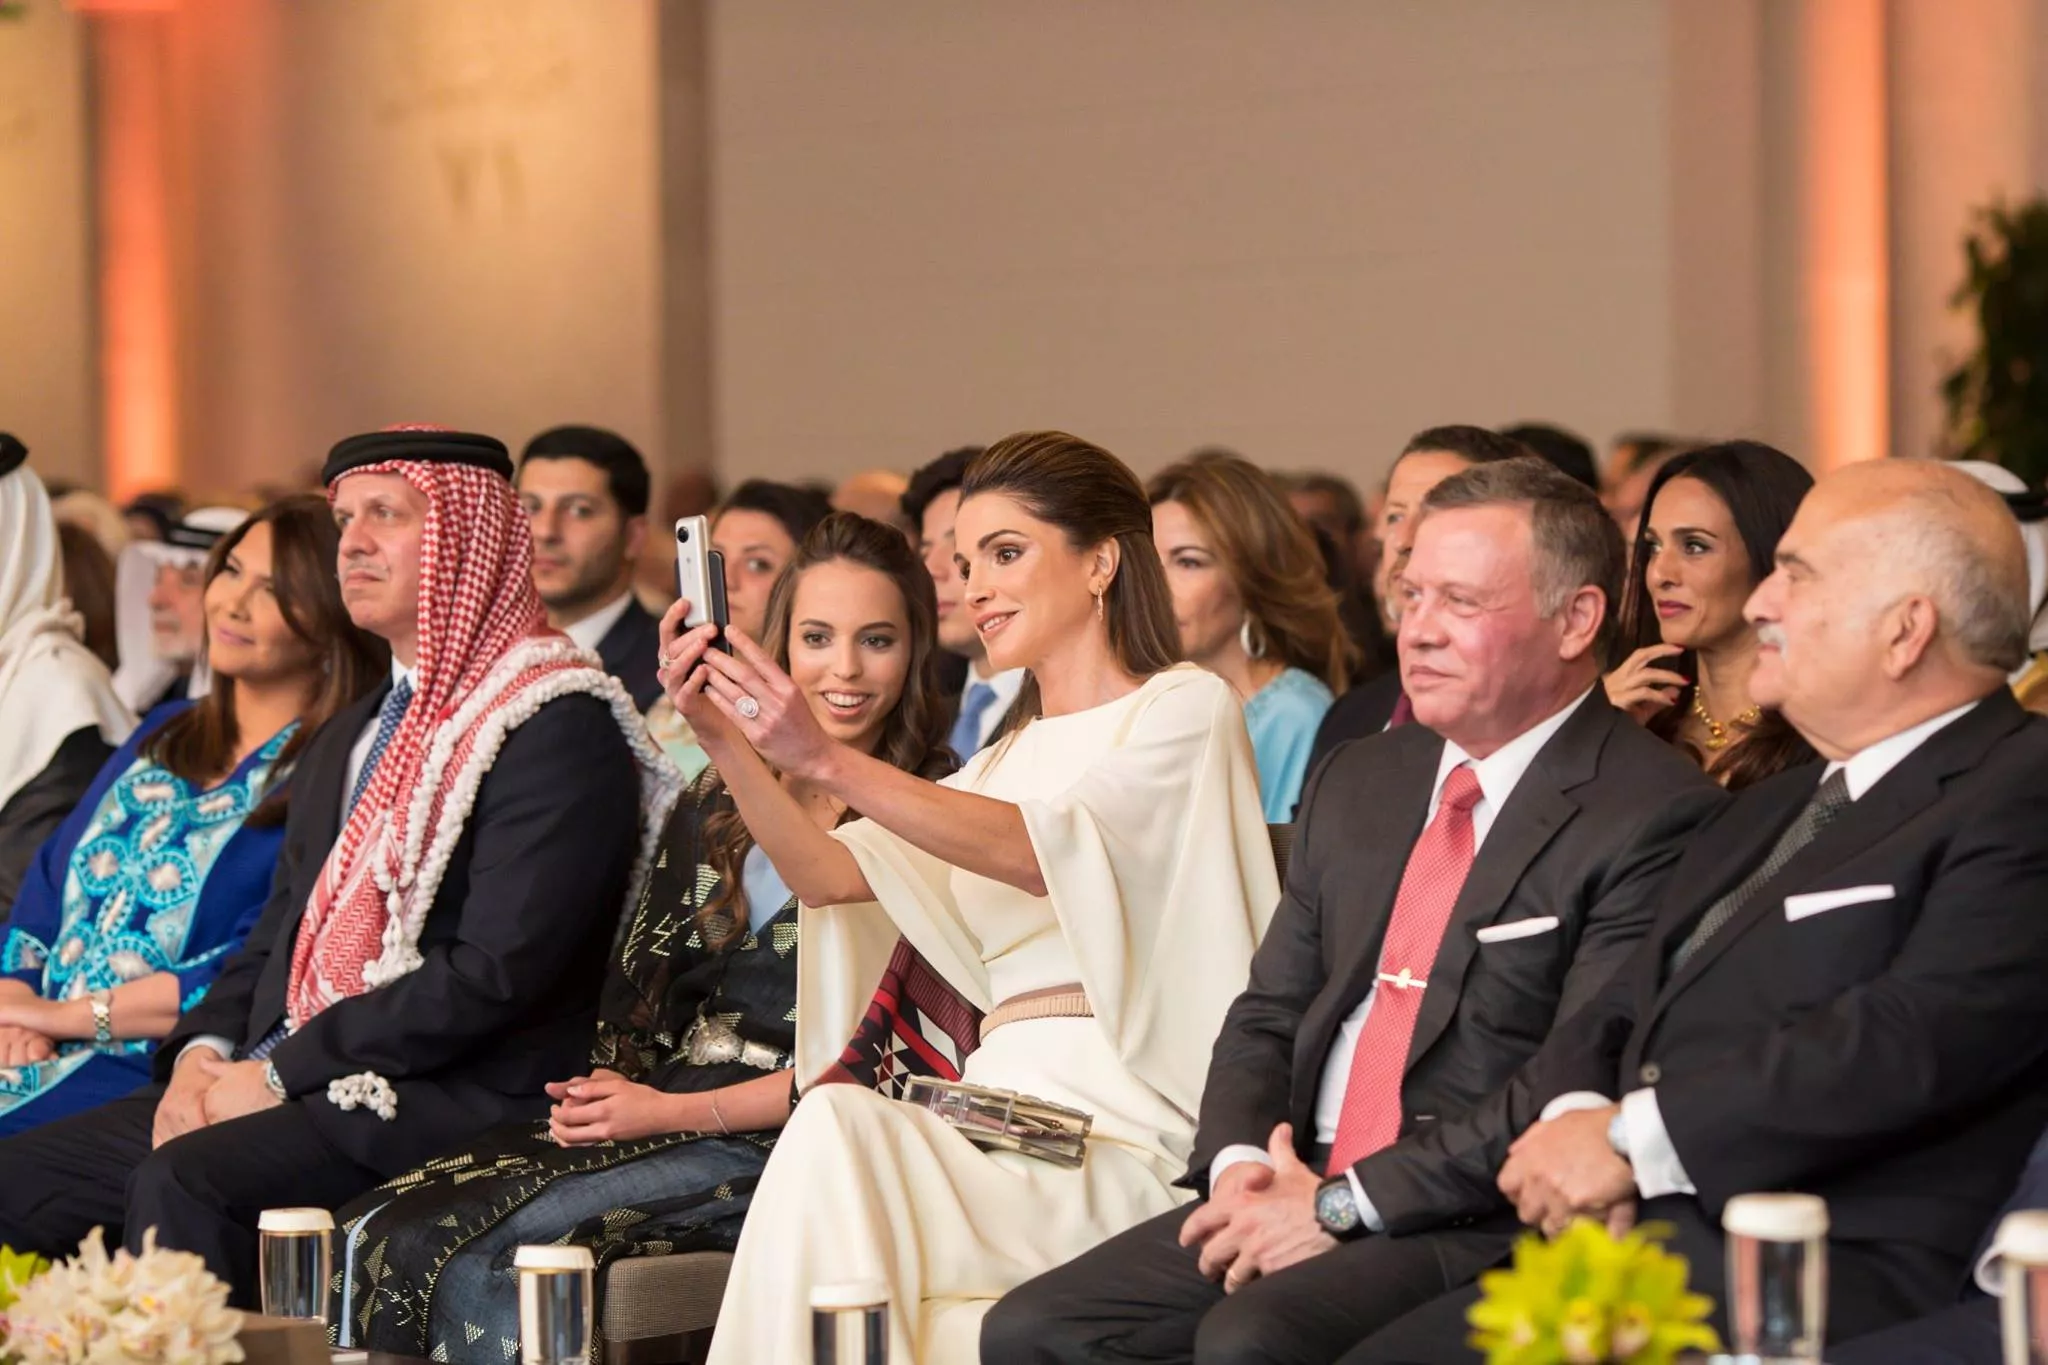 الملكة رانيا وابنتها الأميرة سلمى تحتفلان بعيد استقلال الأردن الـ71 في إطلالتين مستوحتين من تراث البلد